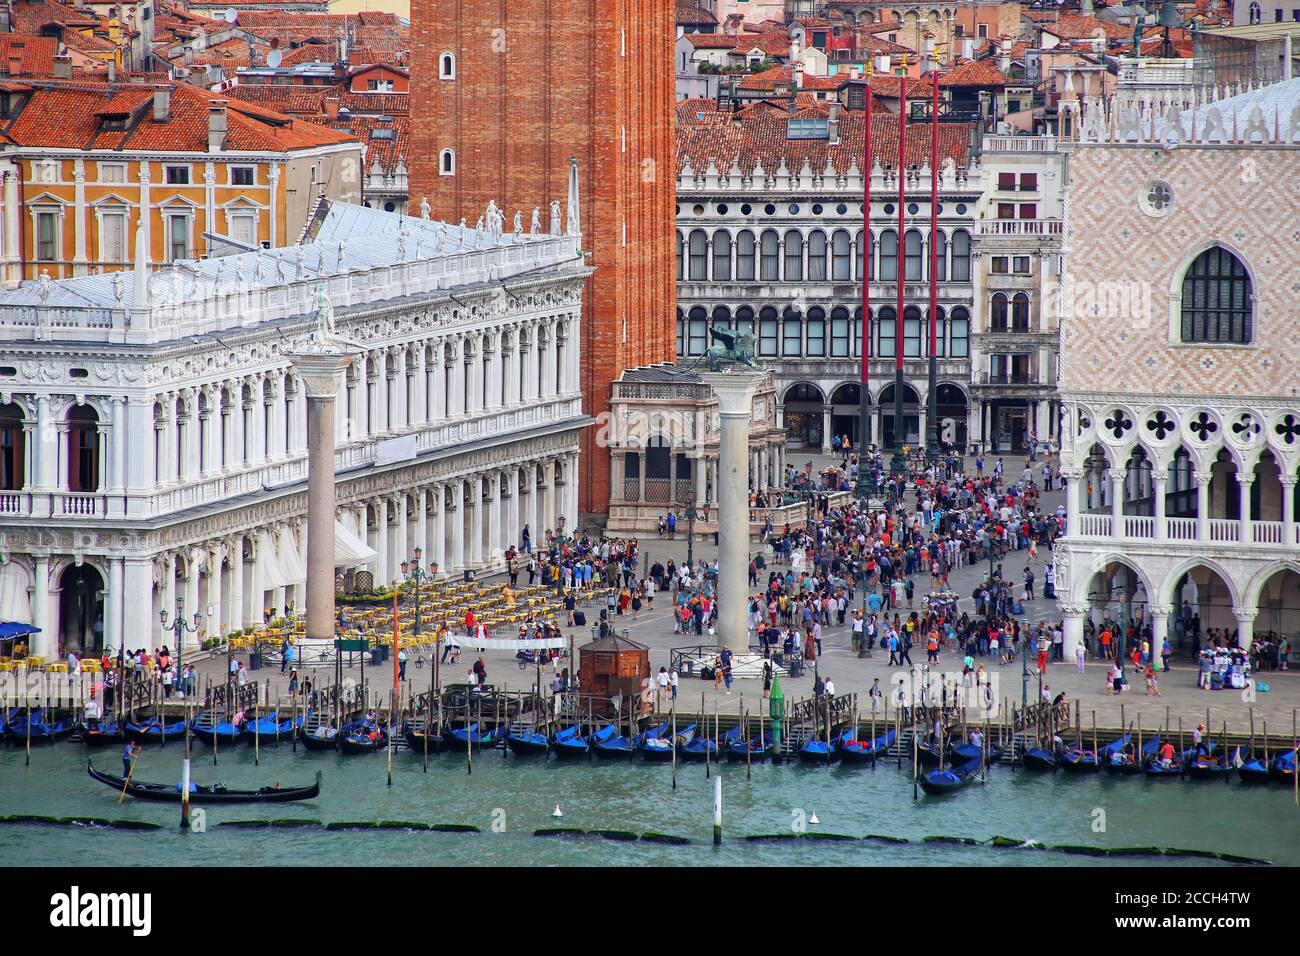 Piazzetta San Marco avec le Palais des Doges et le campanile de Saint Marc à Venise, Italie. Venise est l'une des destinations touristiques les plus importants dans le monde entier Banque D'Images